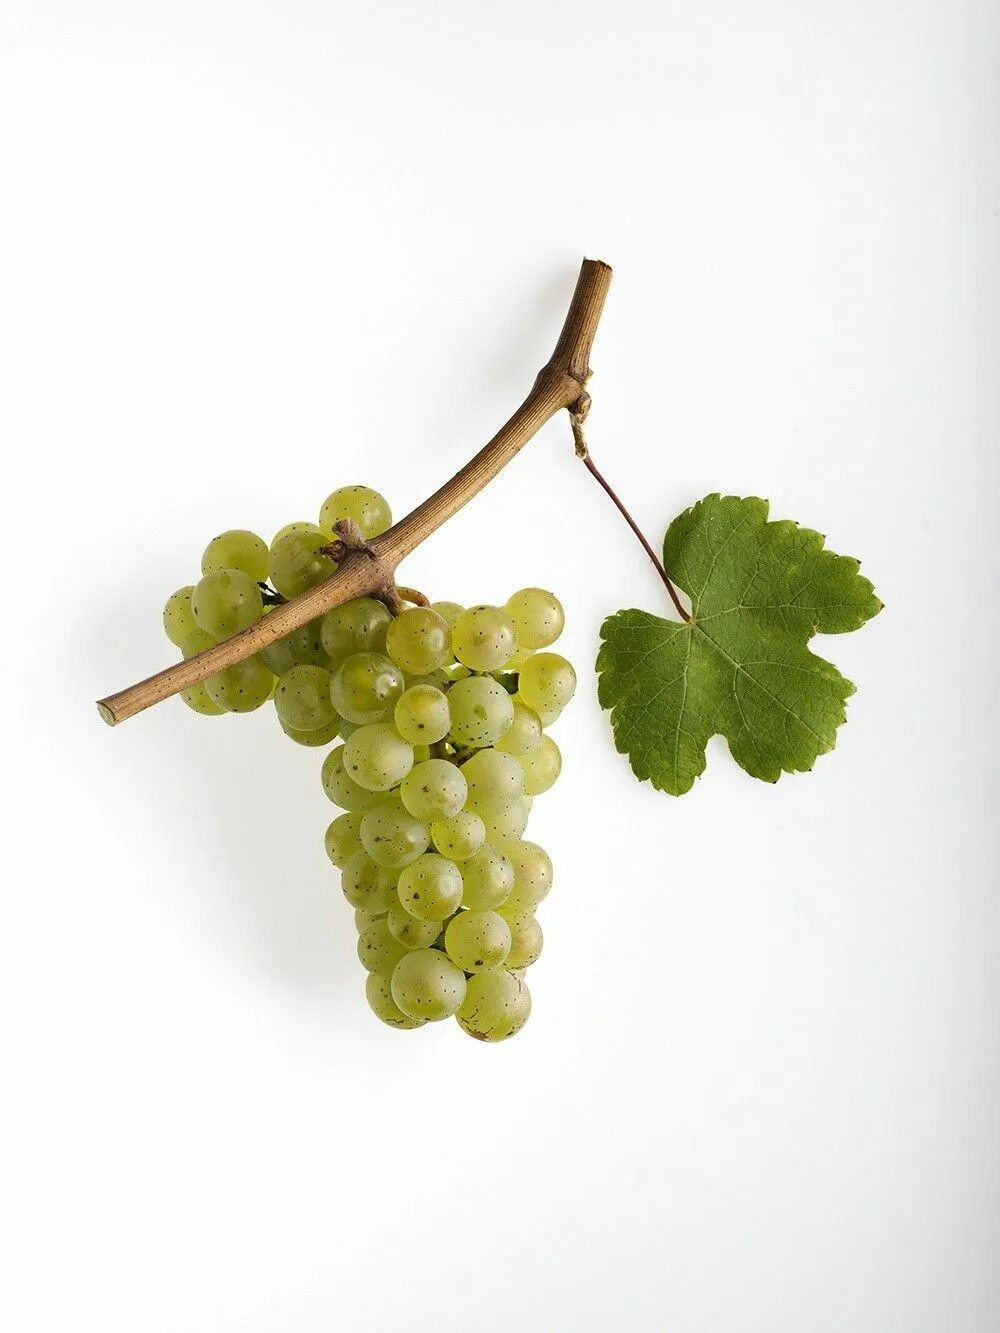 Виноград вино 7 букв. Рислинг Эльзас виноград. Рислинг Рейнский. Сорта винограда Ркацители и Рислинг. Рислинг сорт винограда.